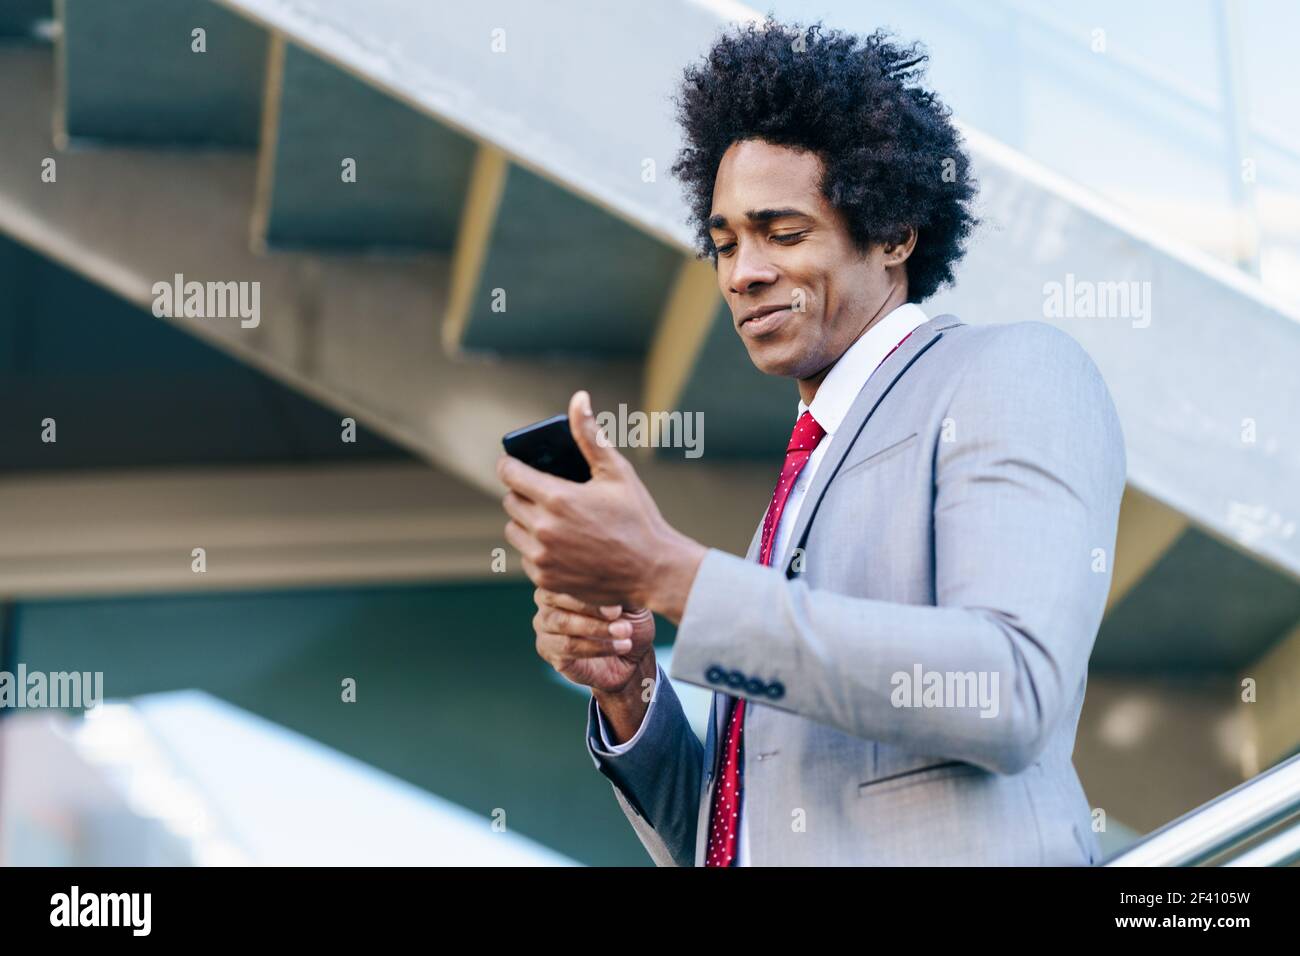 Homme d'affaires noir utilisant son smartphone près d'un immeuble de bureaux. Homme avec cheveux afro.. Homme d'affaires noir utilisant un smartphone près d'un immeuble de bureaux Banque D'Images